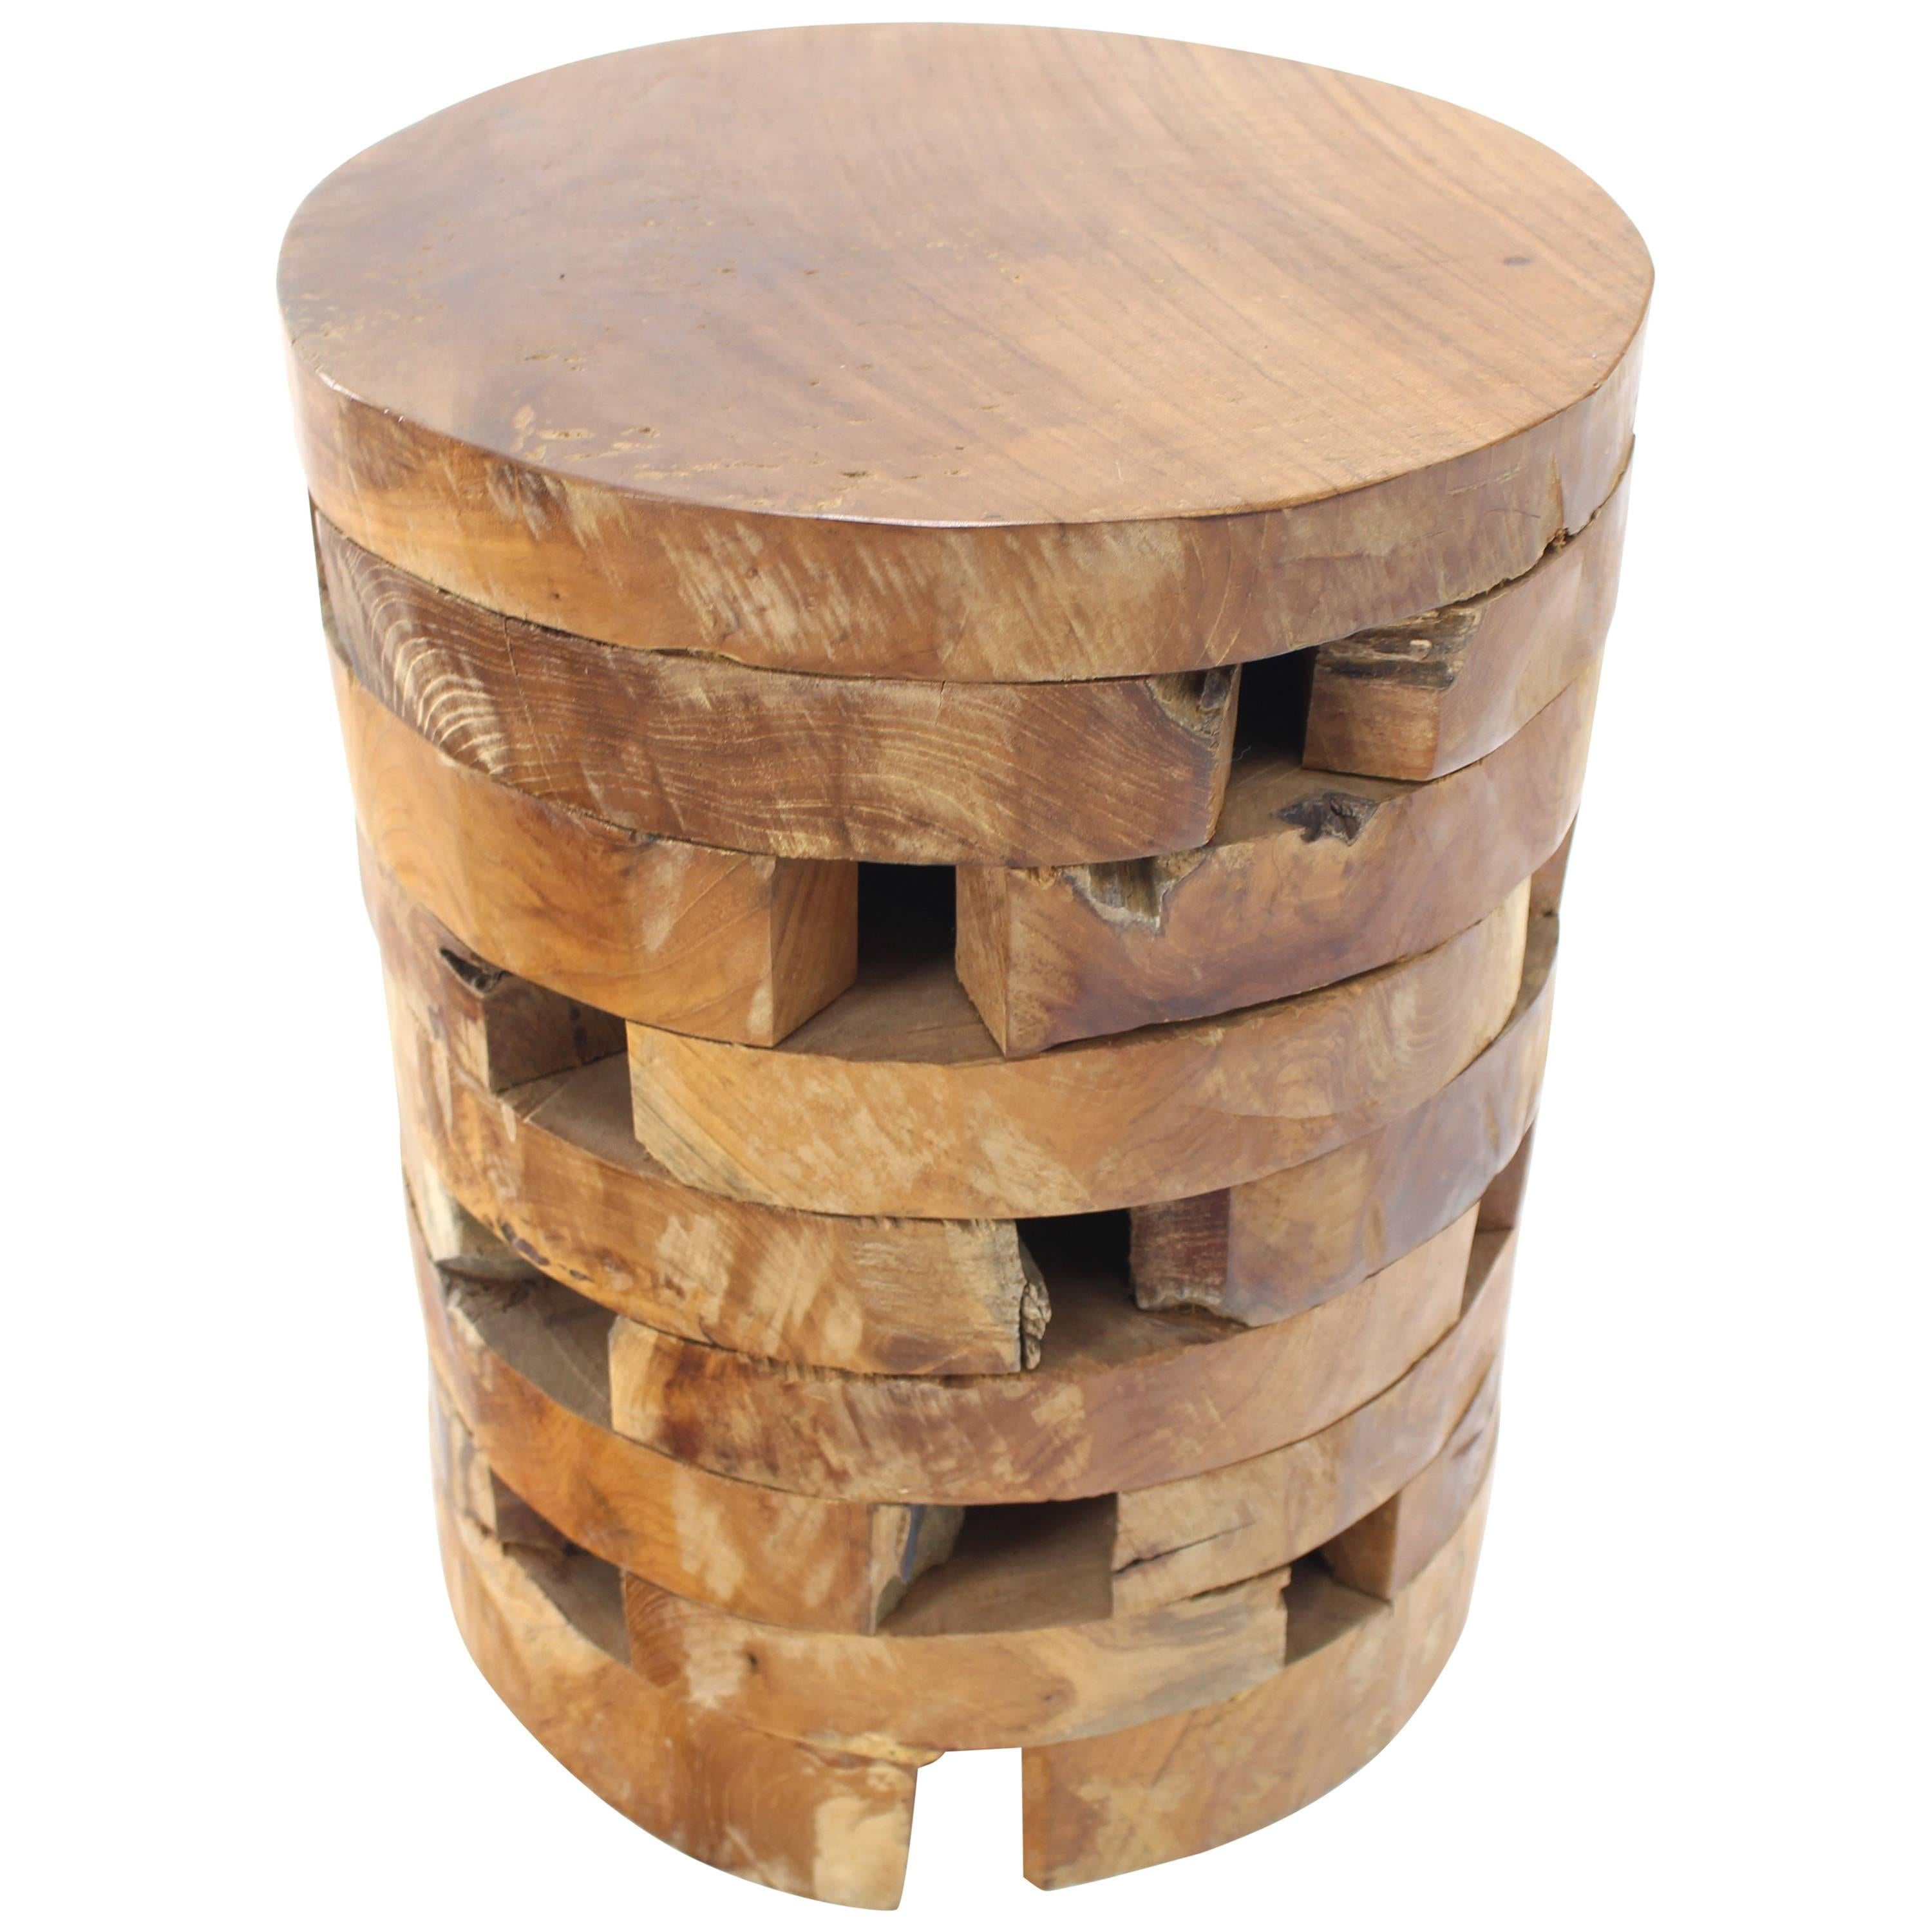 Stacked Teak Wood Block Round Pedestal Stool Bench